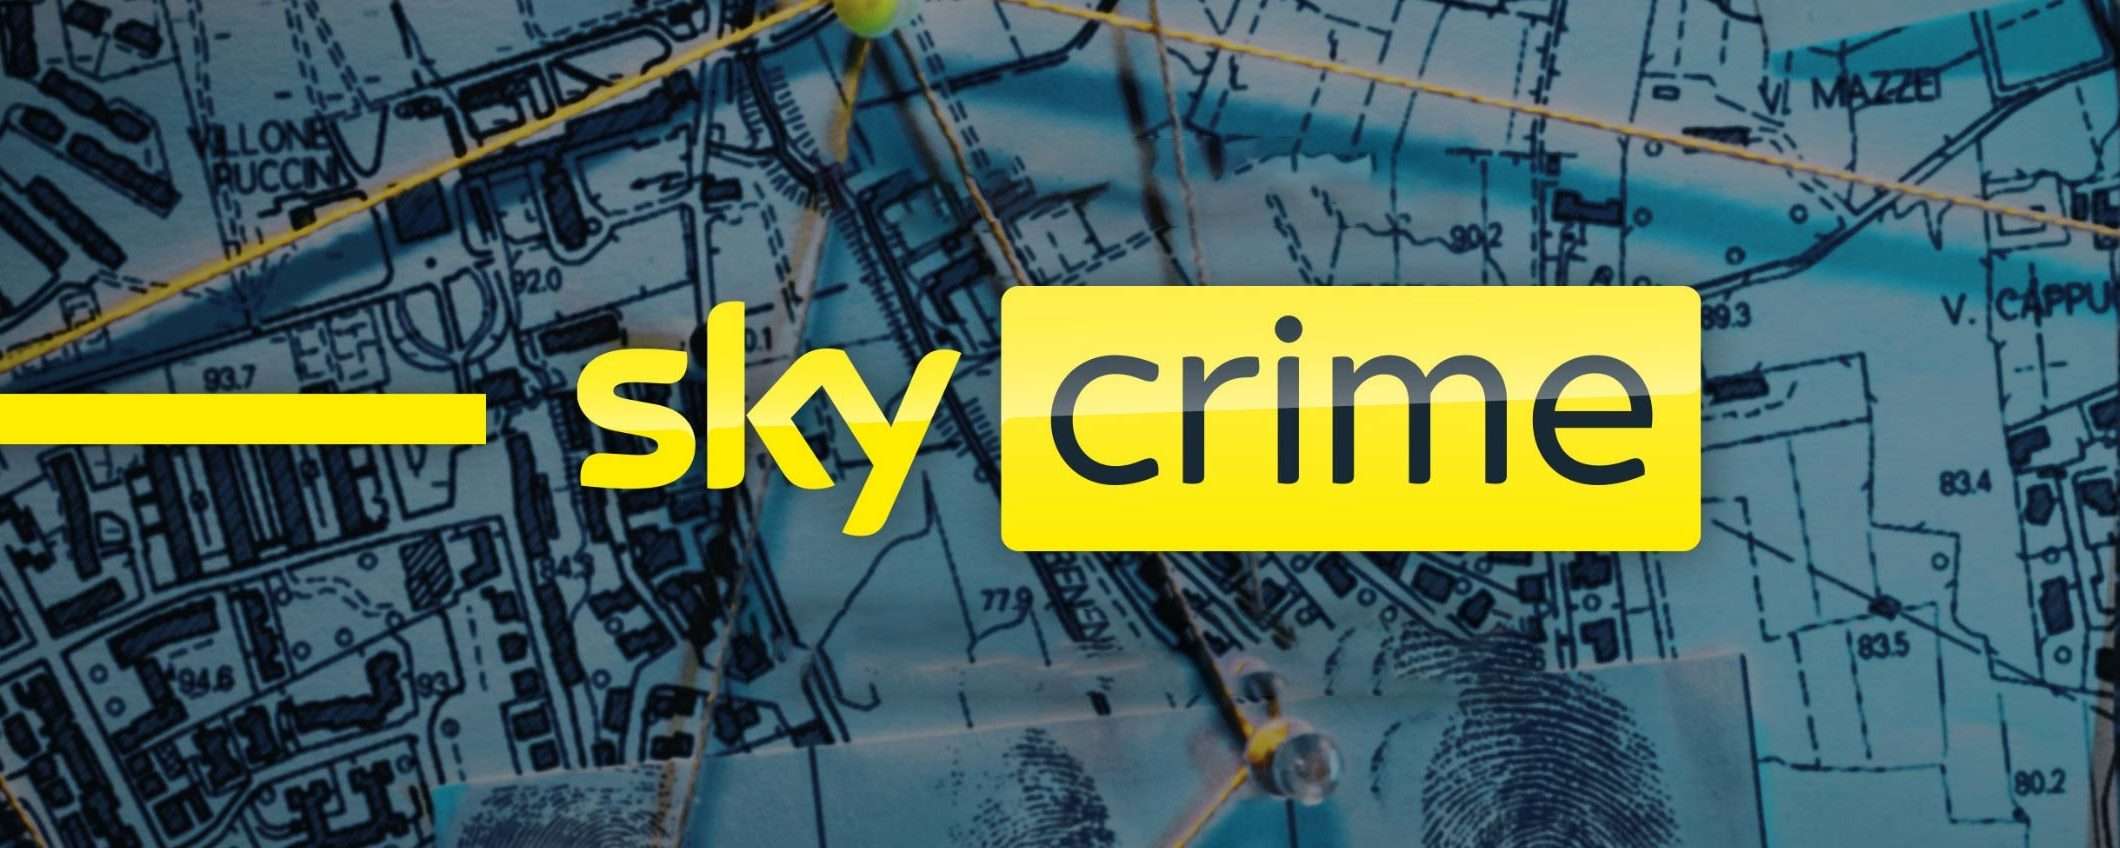 Sky Crime su Sky e in streaming su NOW dall'1 novembre